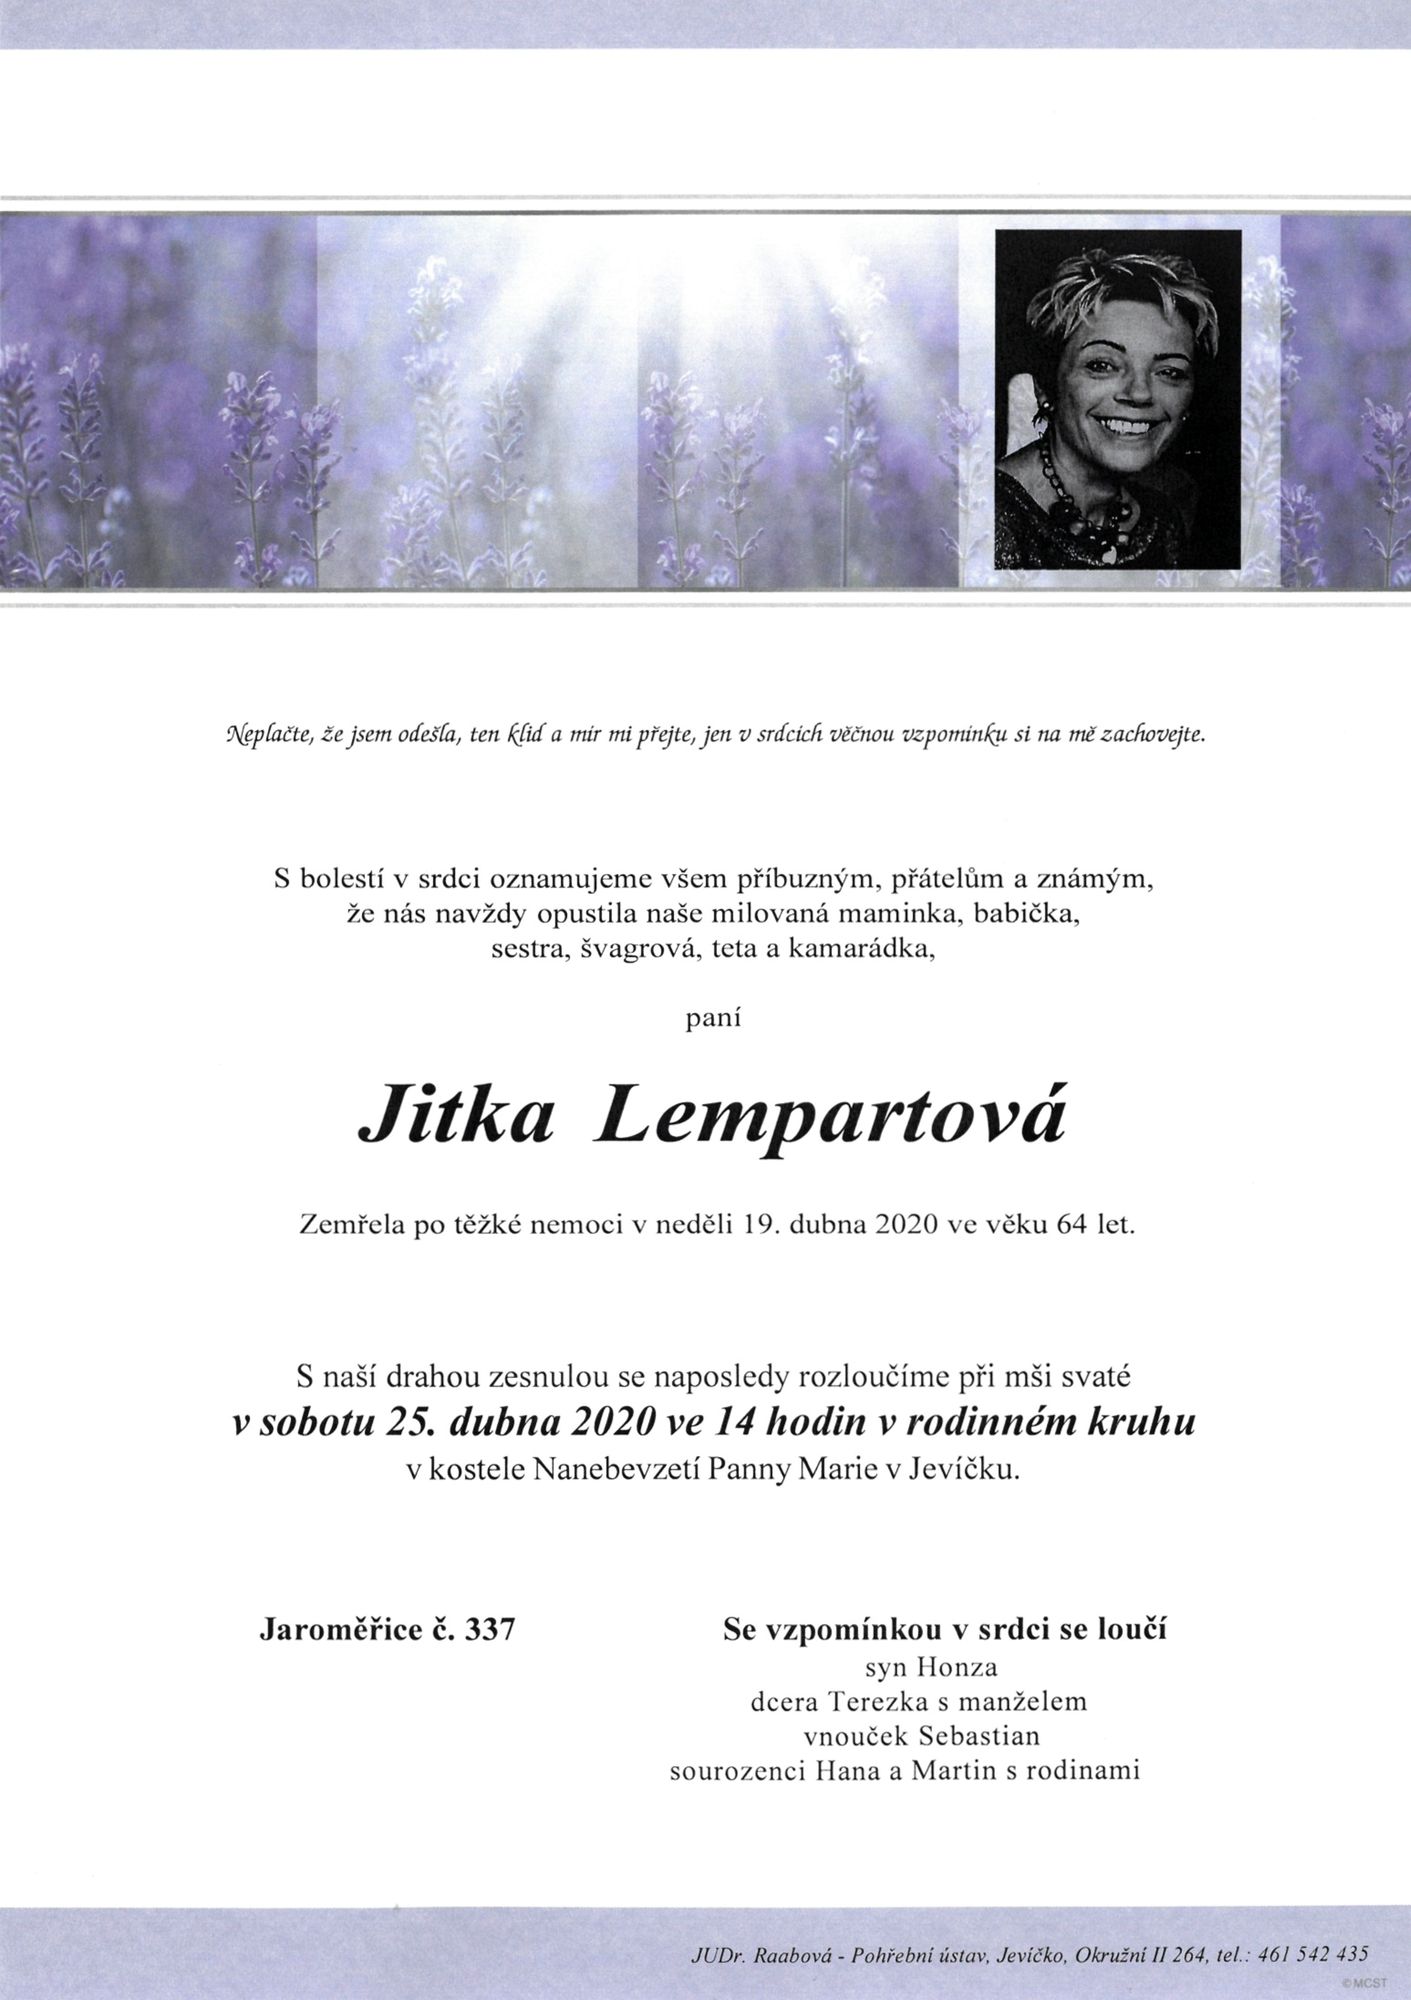 Jitka Lempartová